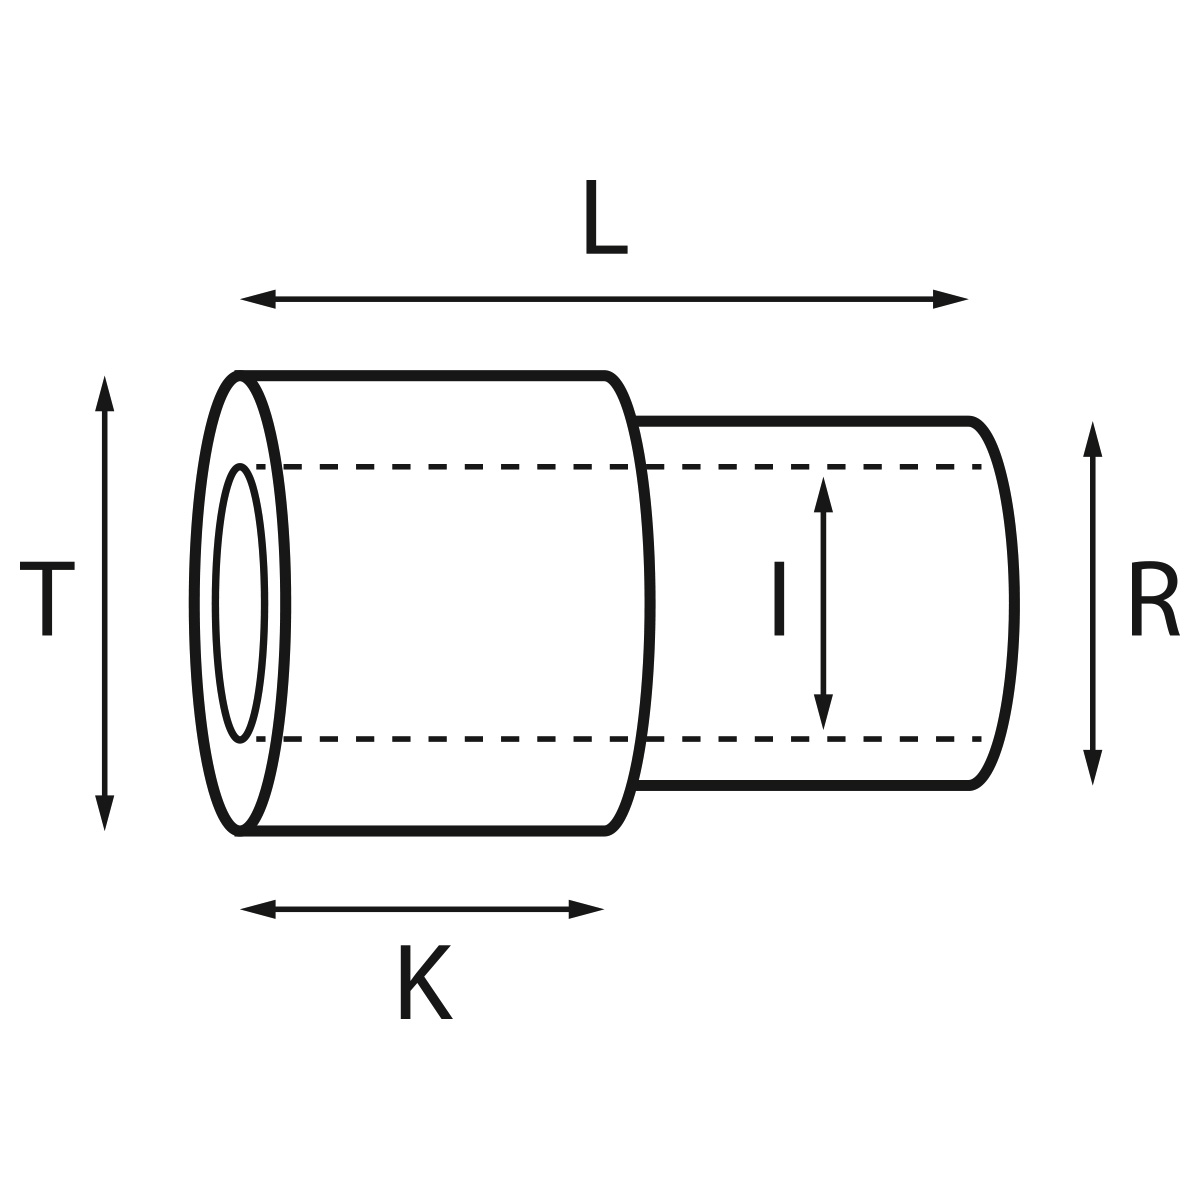 Gehäusetube Typ AS 13826, Tubus Ø 2 mm, Gesamtlänge 4,8 mm, für wasserdichte Kronen